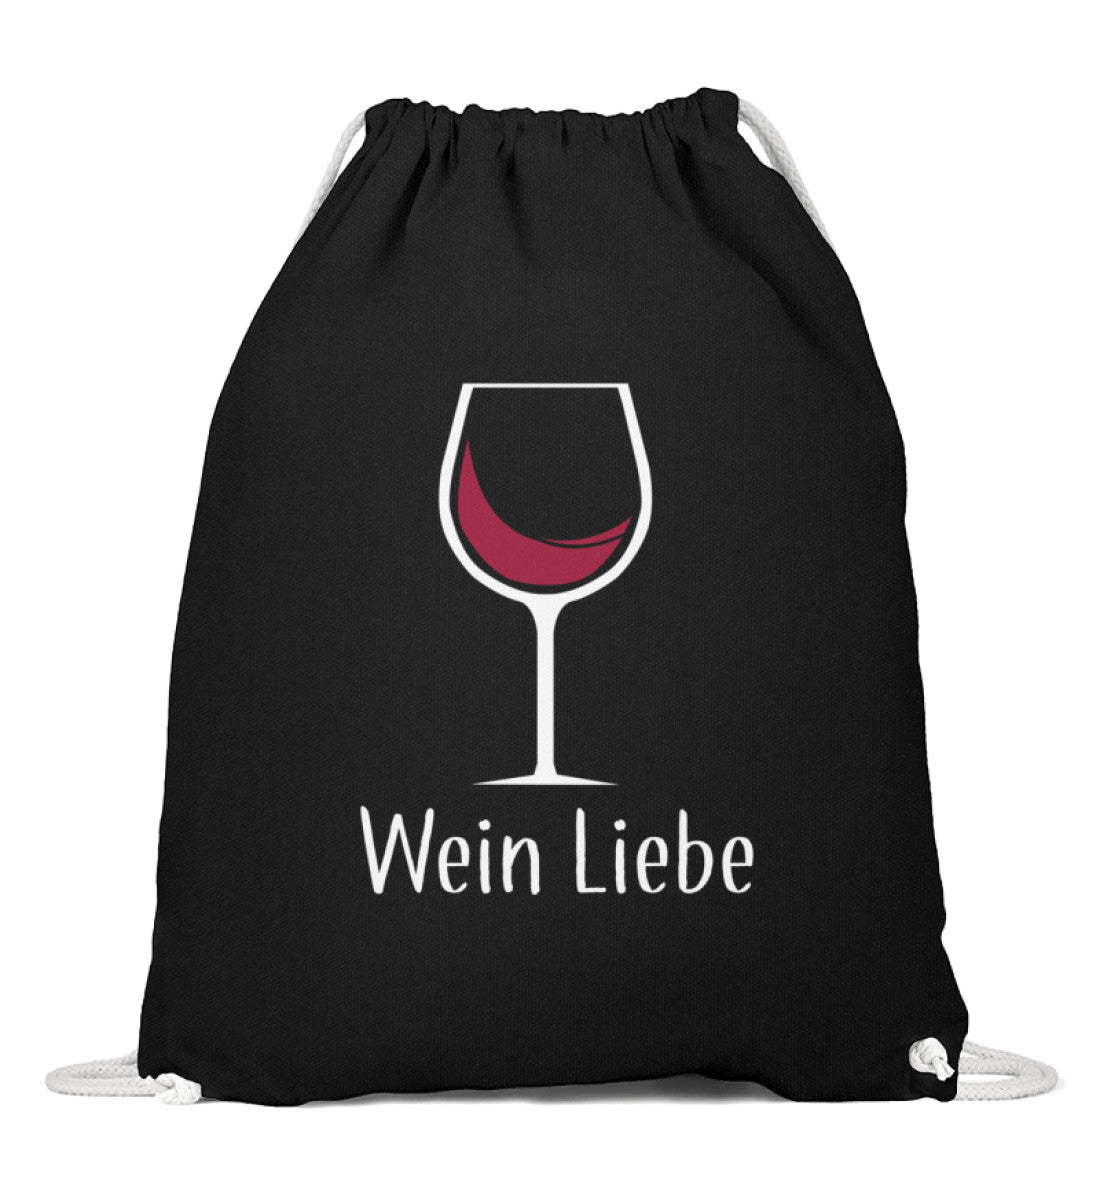 Wein Liebe Turnbeutel - talejo